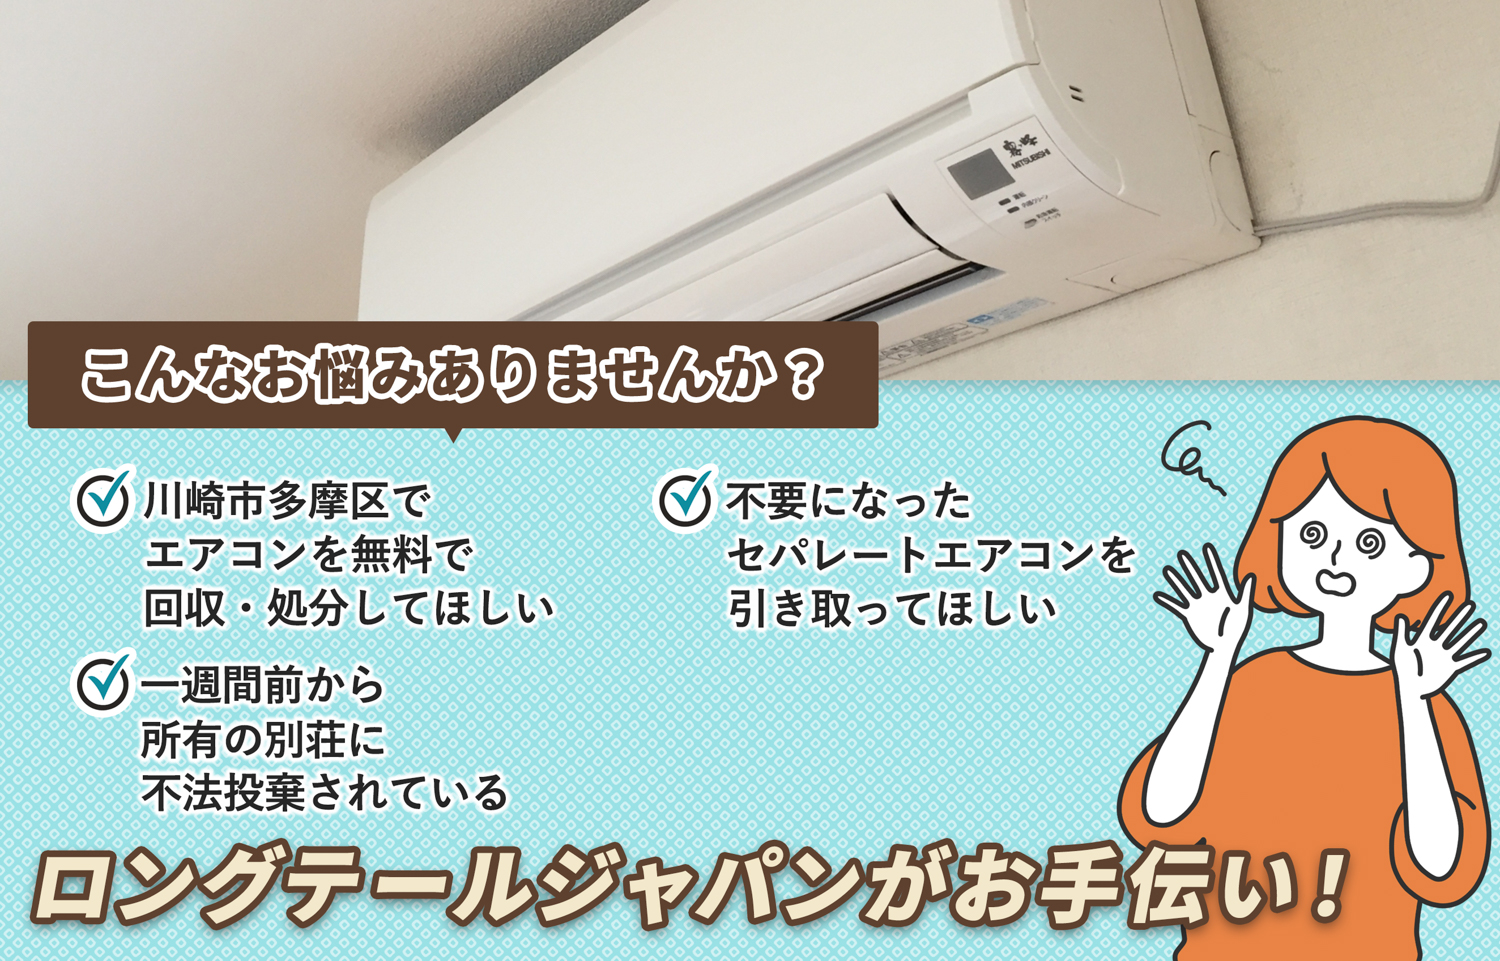 川崎市多摩区でこんなエアコンの処分にお困りでしたらエアコン無料回収処分隊がお手伝いします。